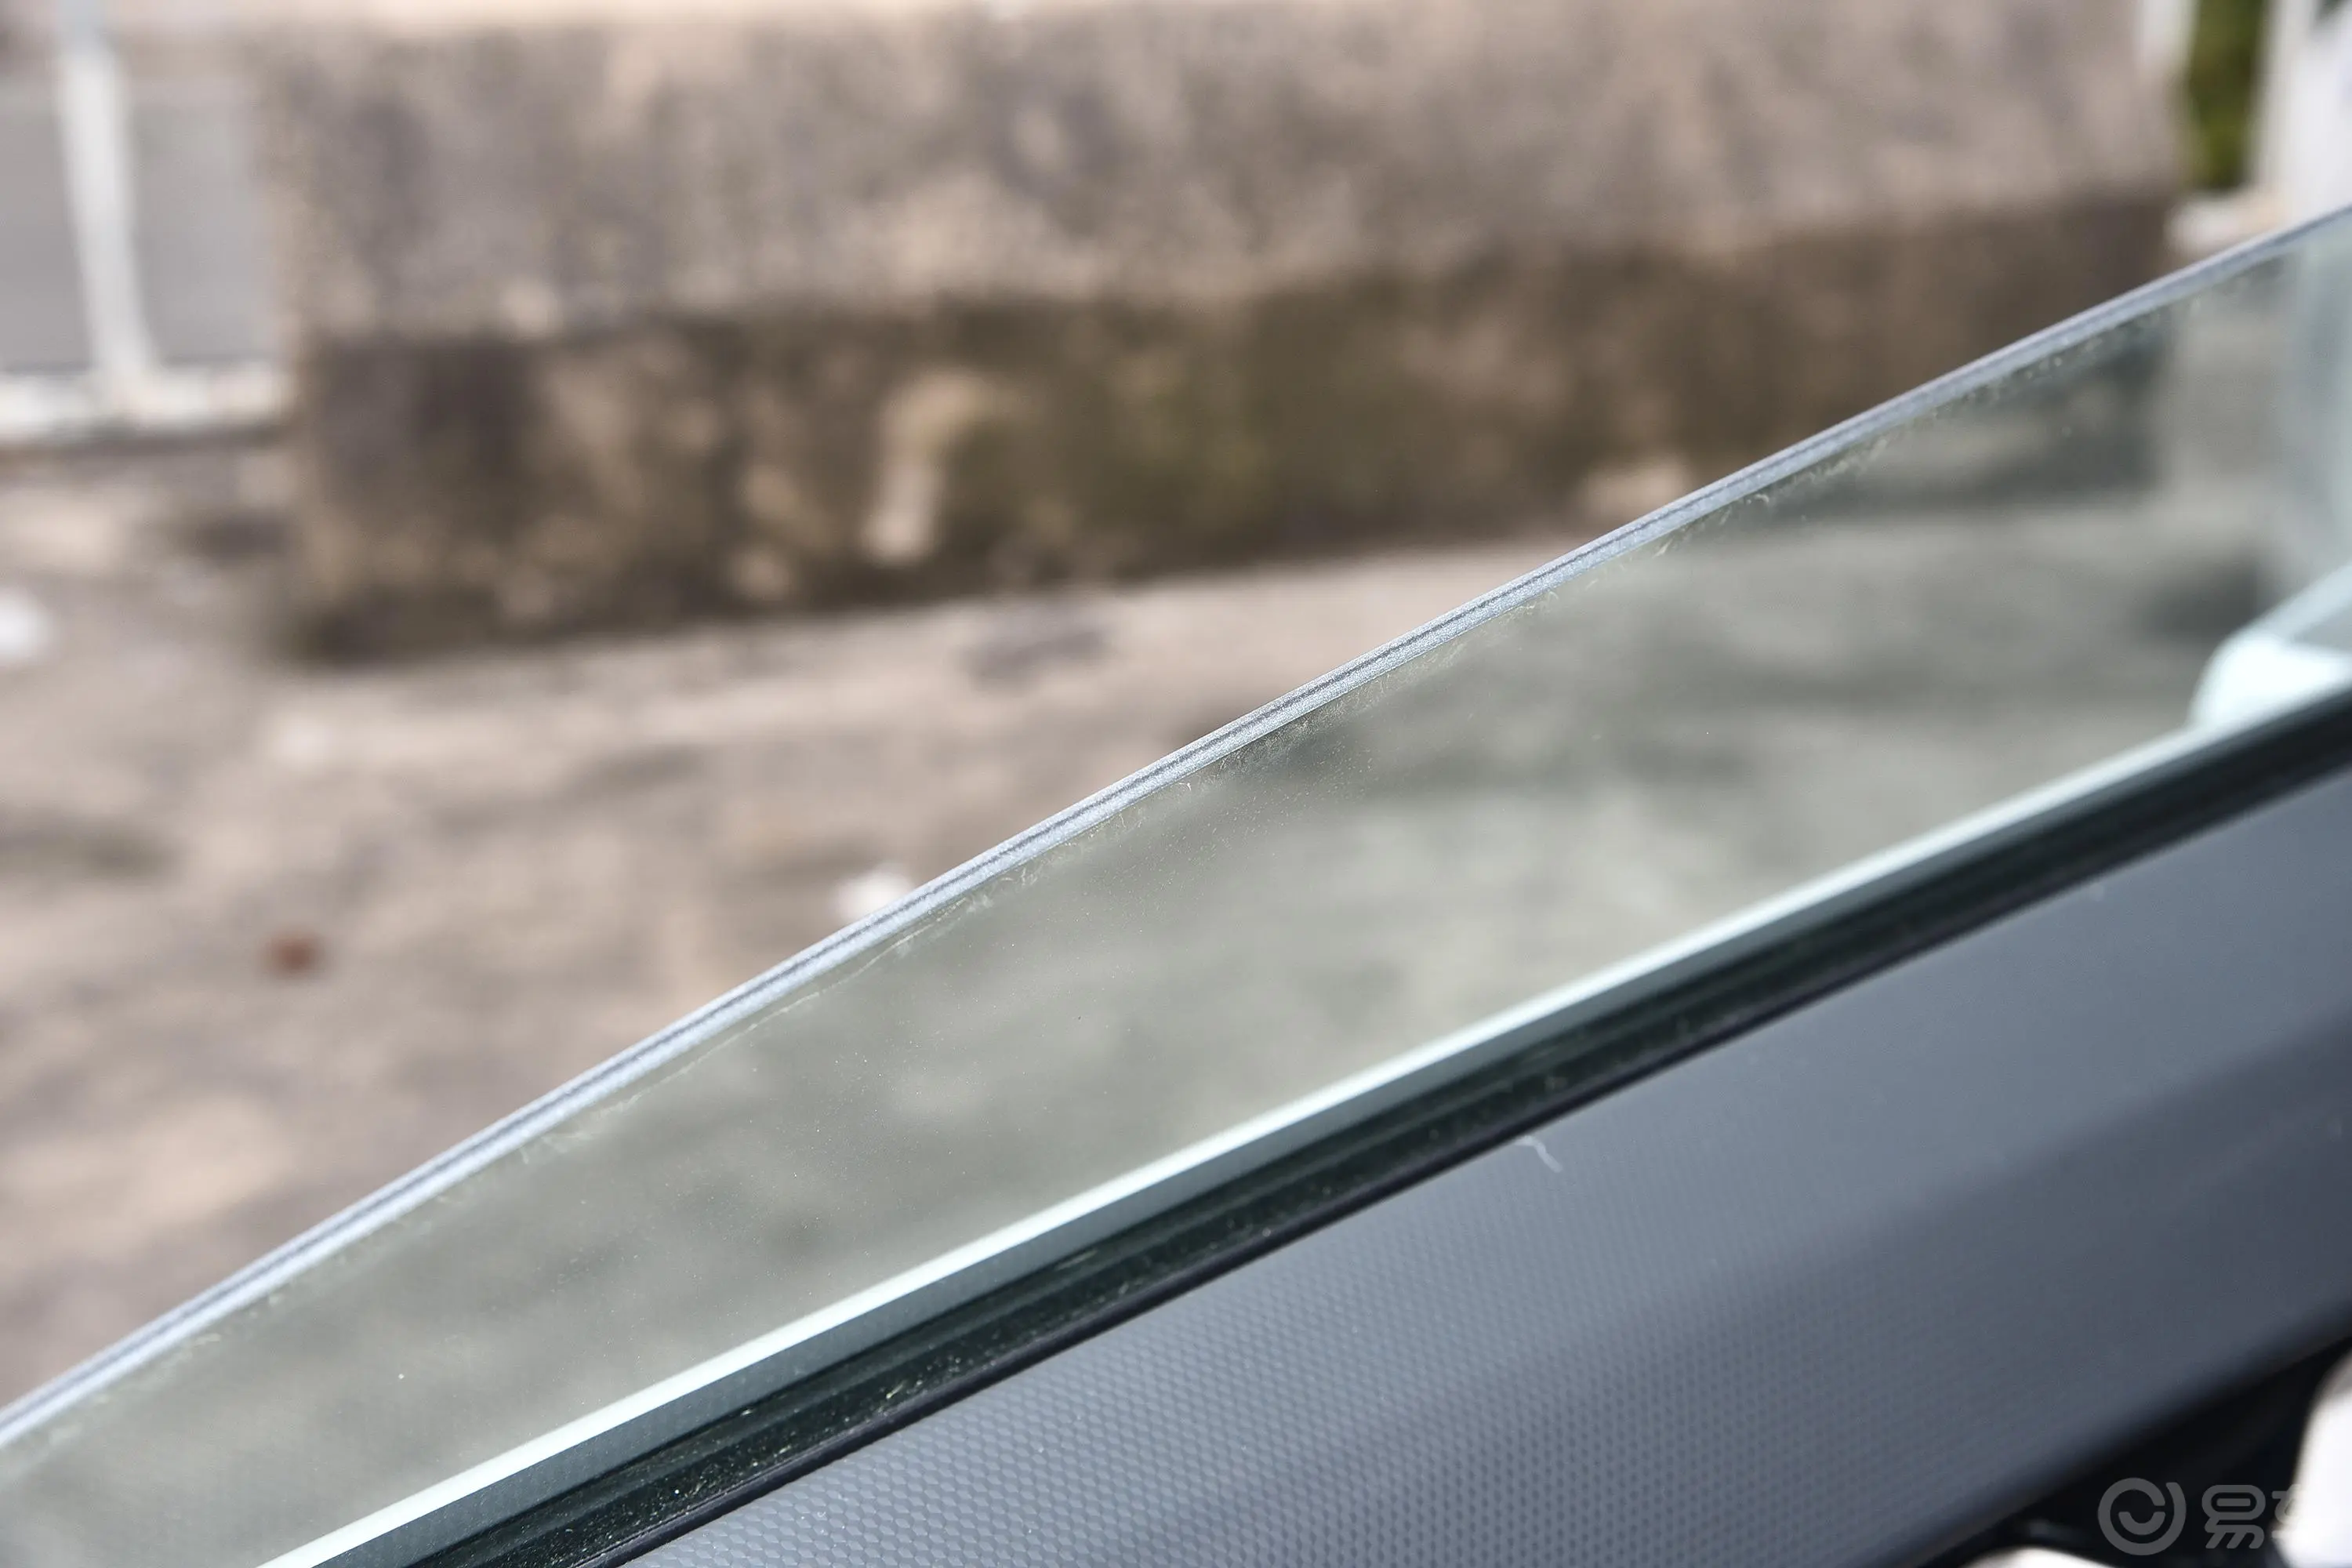 吉利几何APro 430km 青苹果Halo后排玻璃材质特写